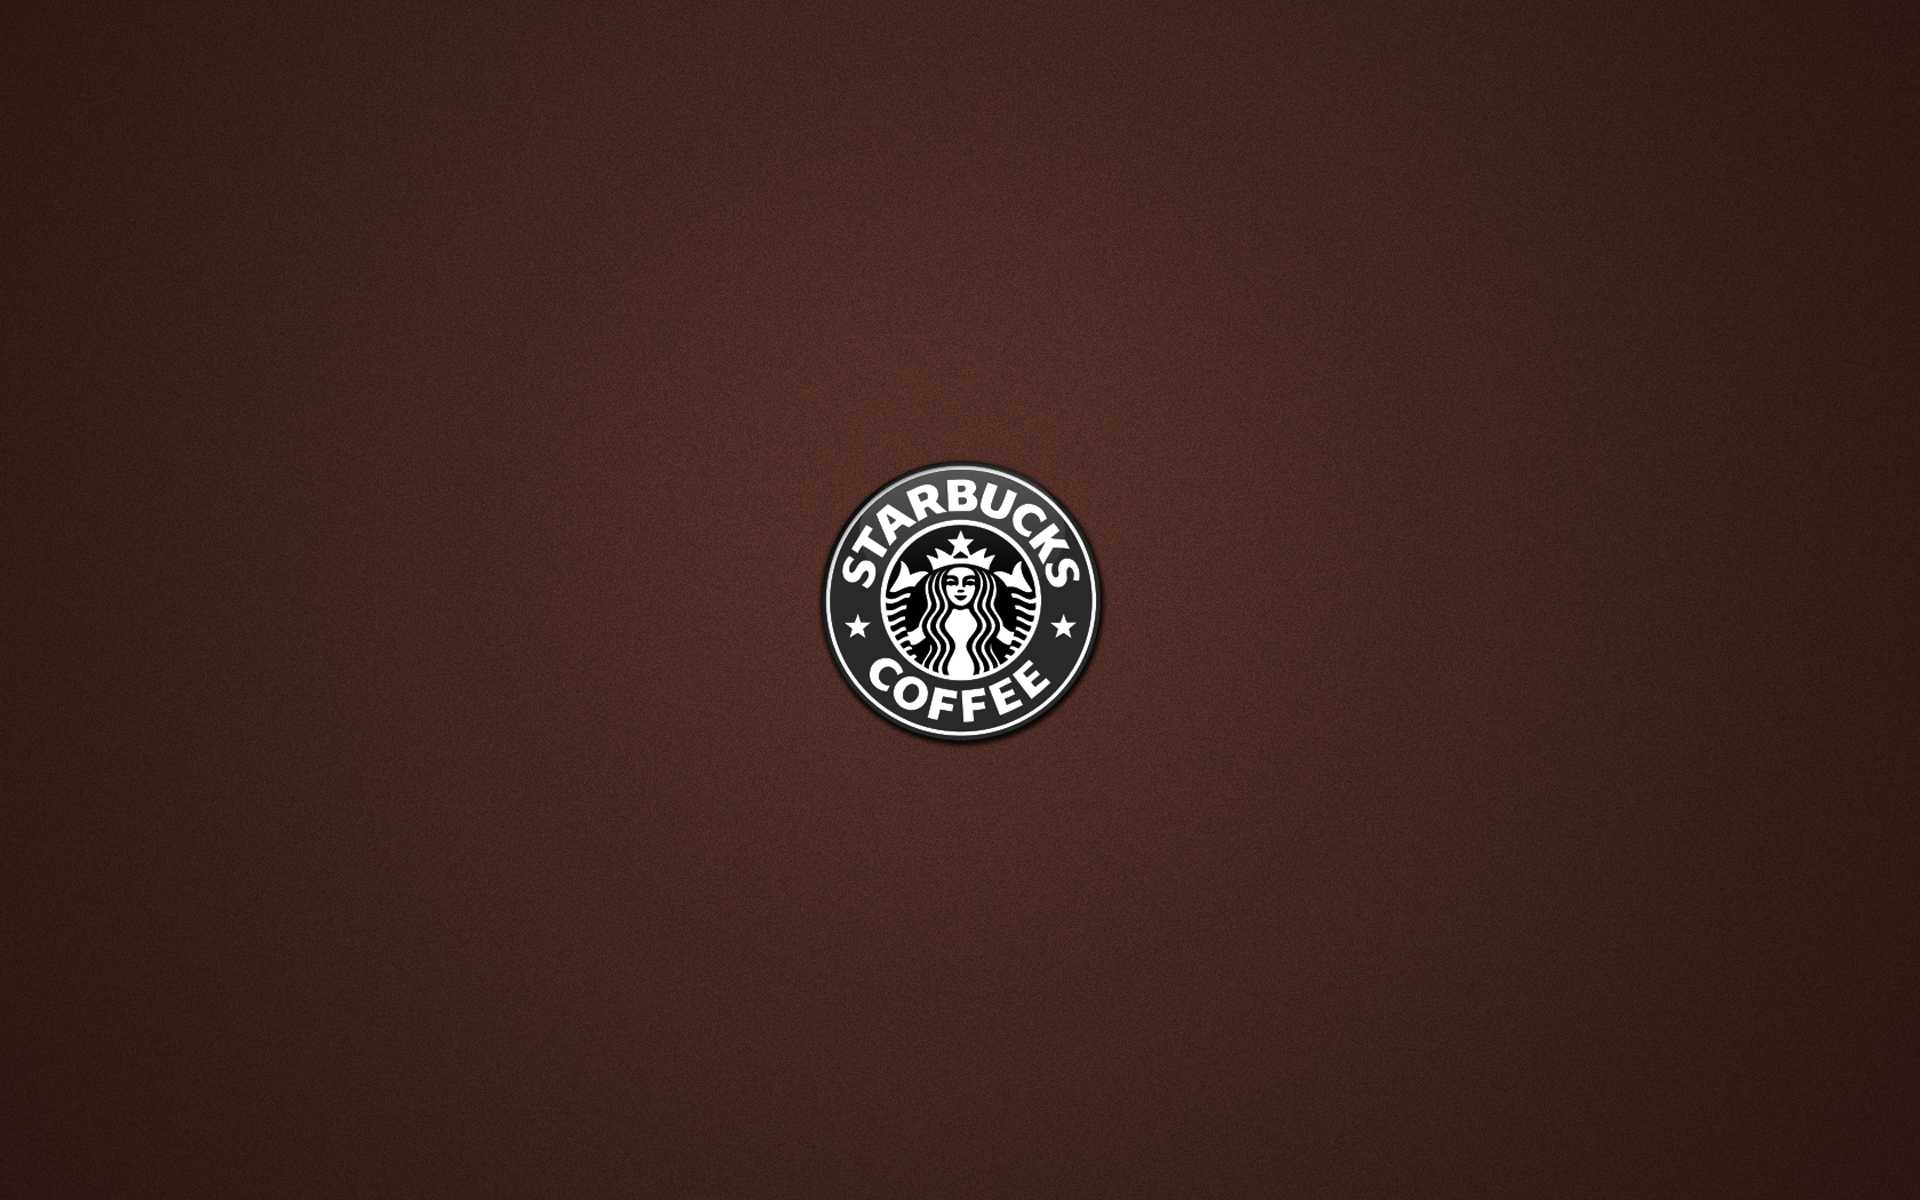 Starbucks Logo Backgrounds For Powerpoint Templates – Ppt With Starbucks Powerpoint Template